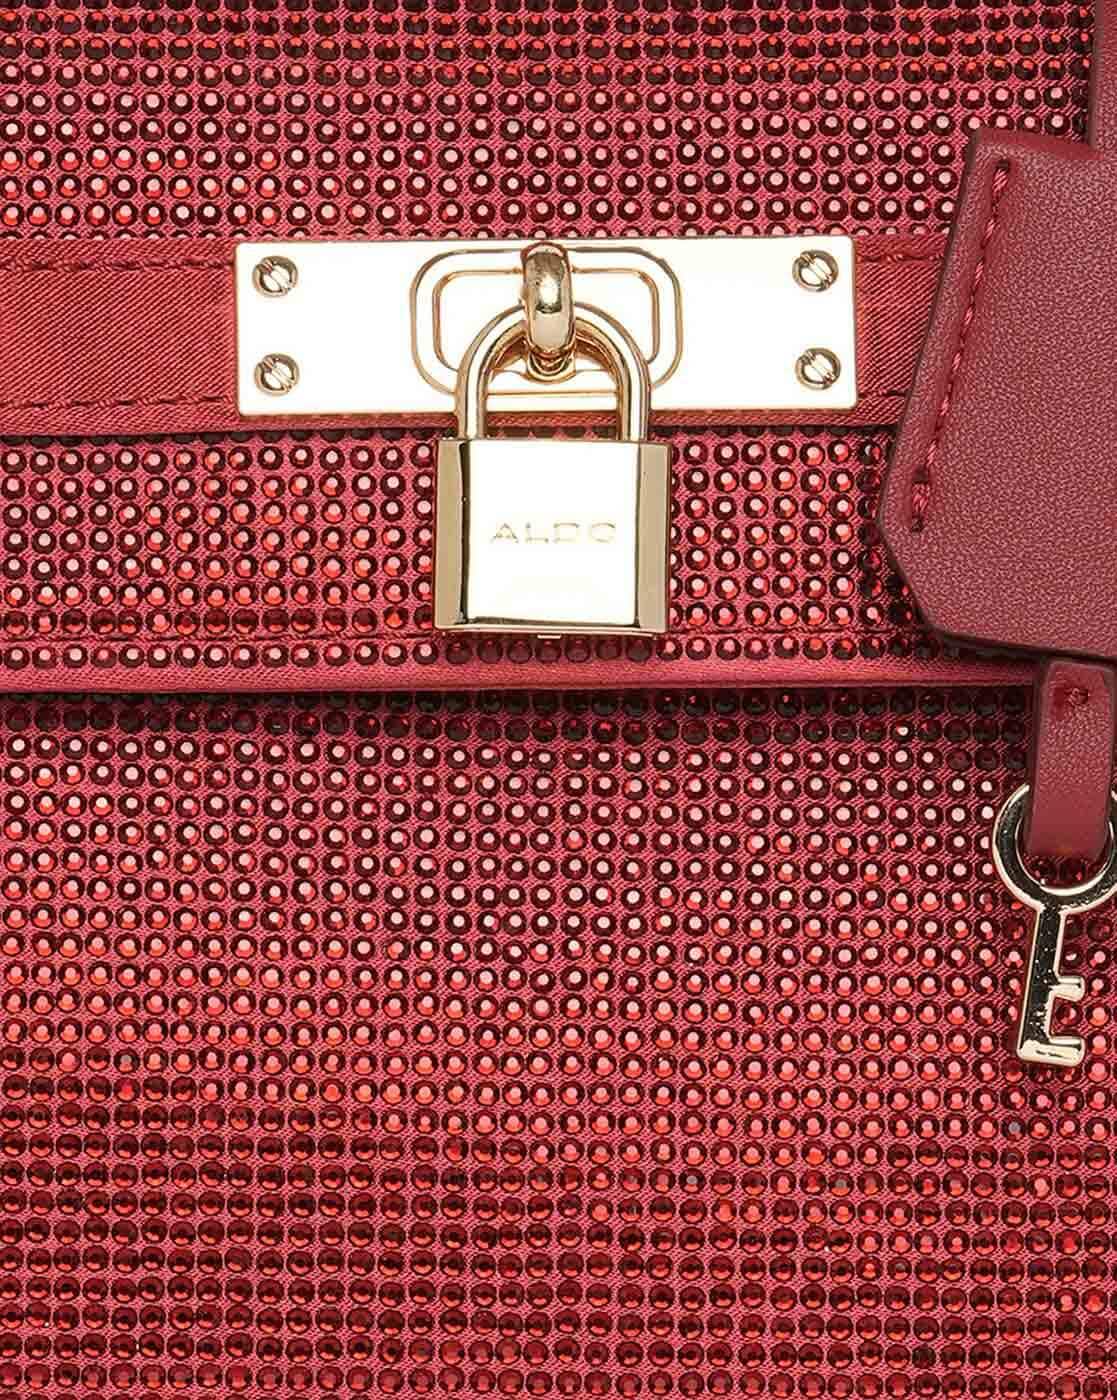 ALDO Red Backpacks | Mercari